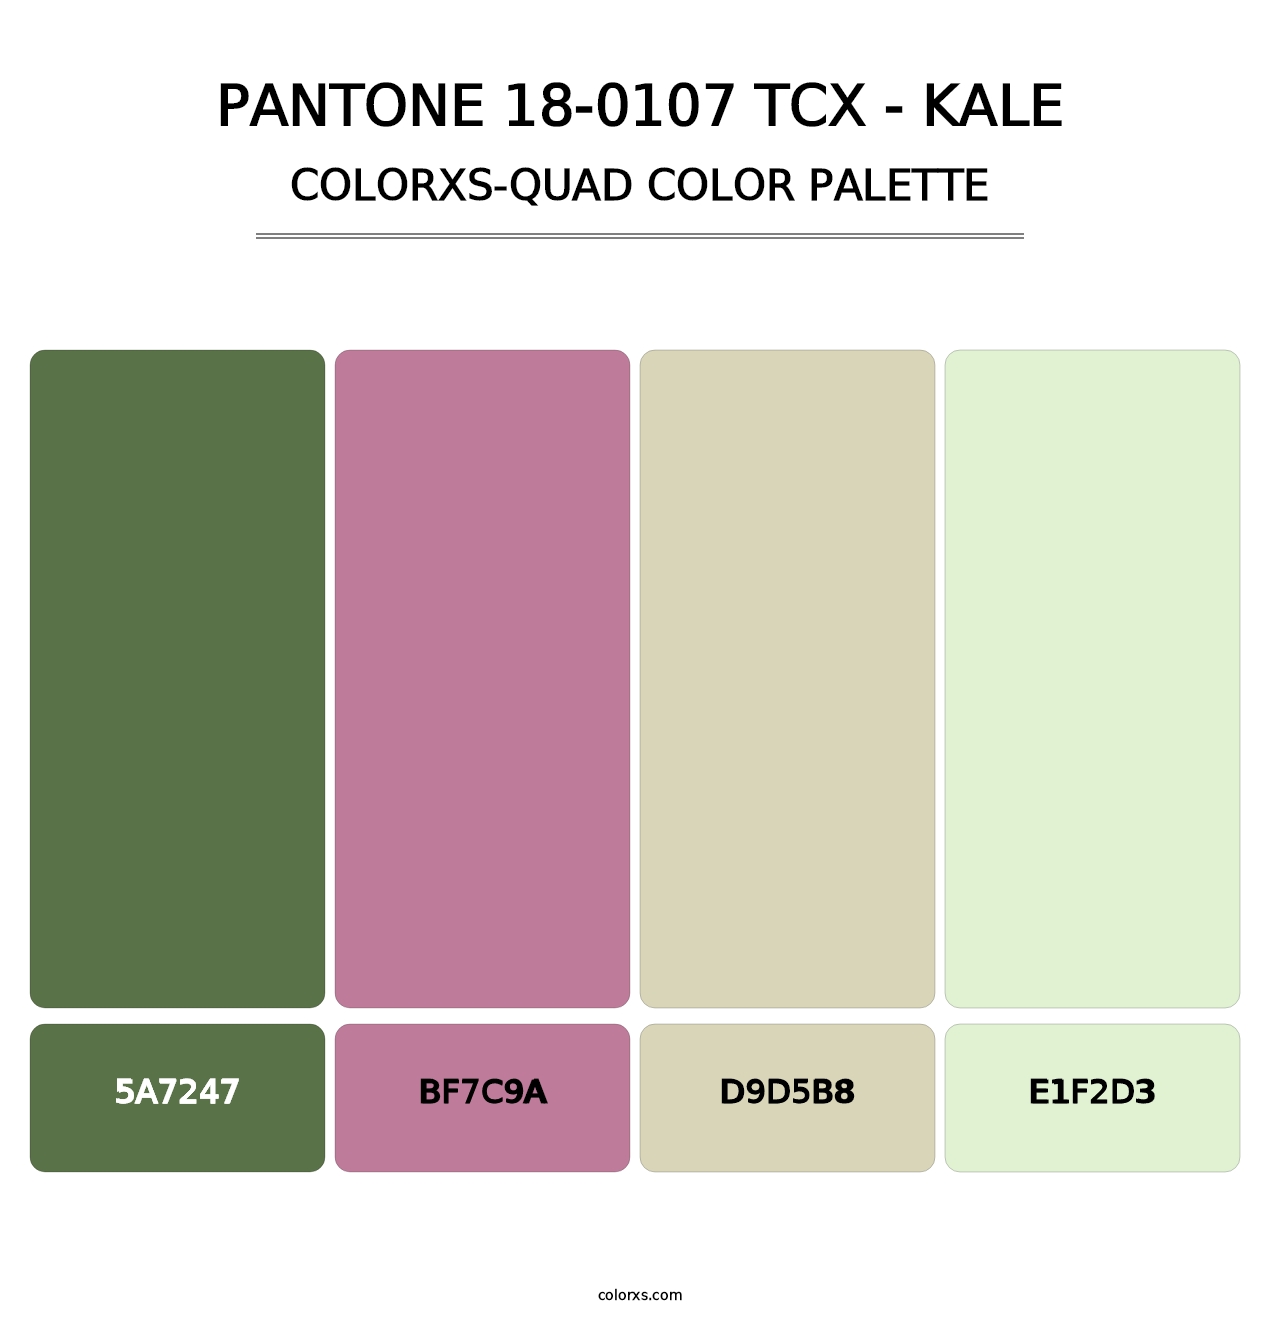 PANTONE 18-0107 TCX - Kale - Colorxs Quad Palette